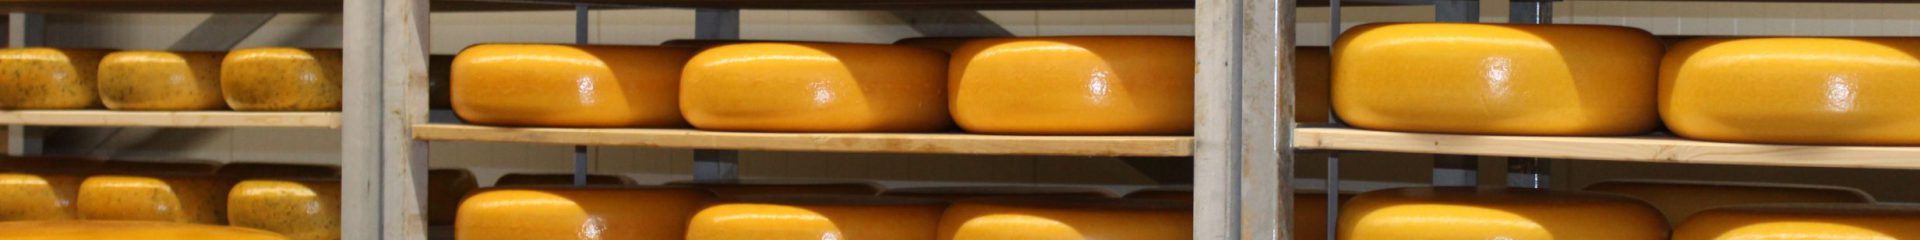 Delicious Etra Aged Farmhouse Cheese